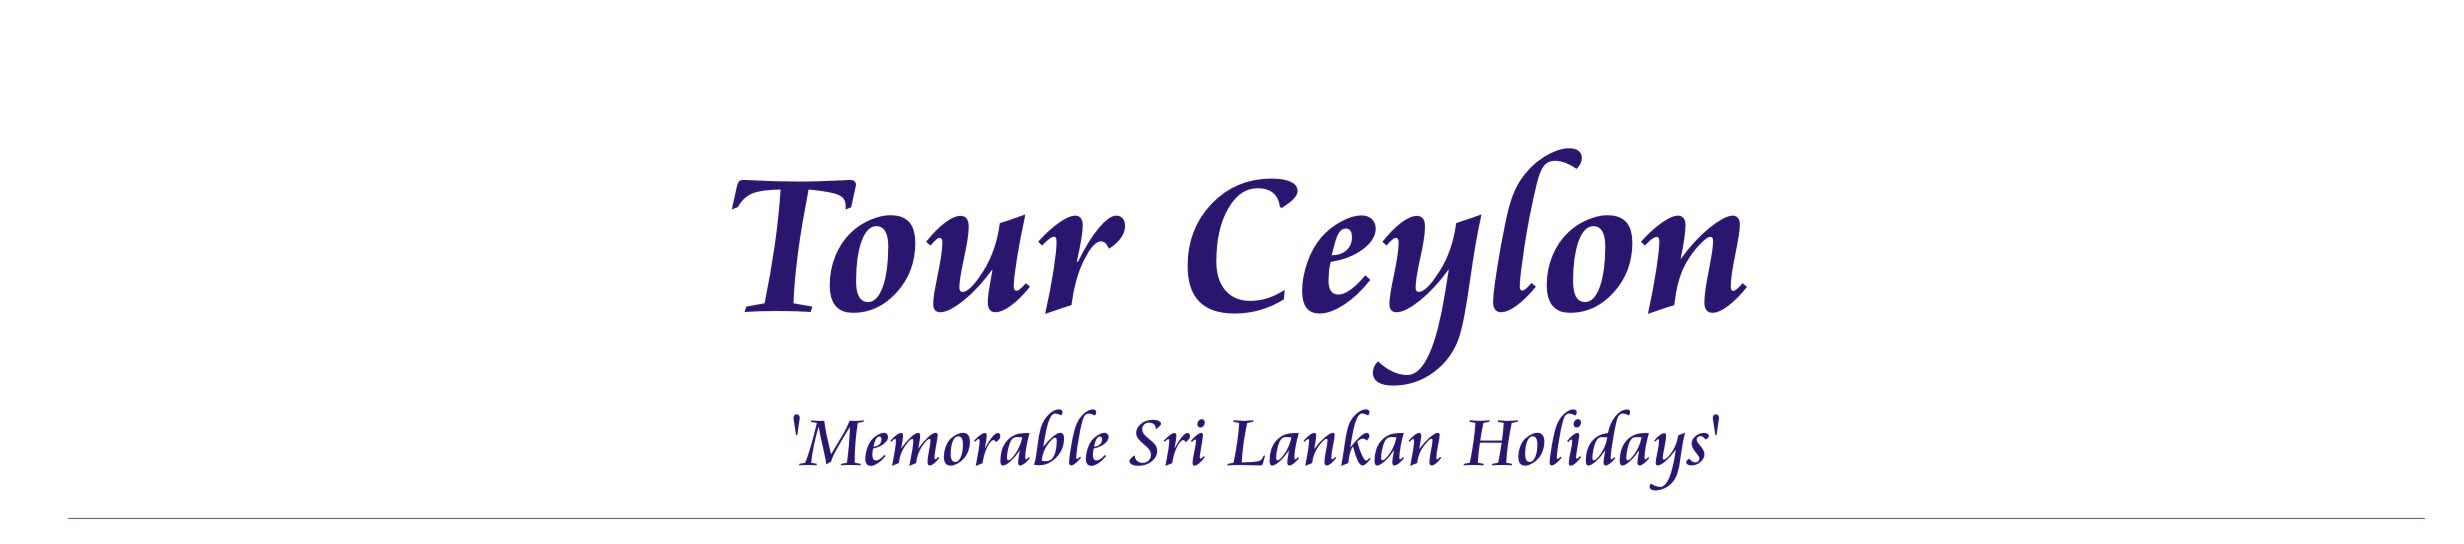 Tour Ceylon